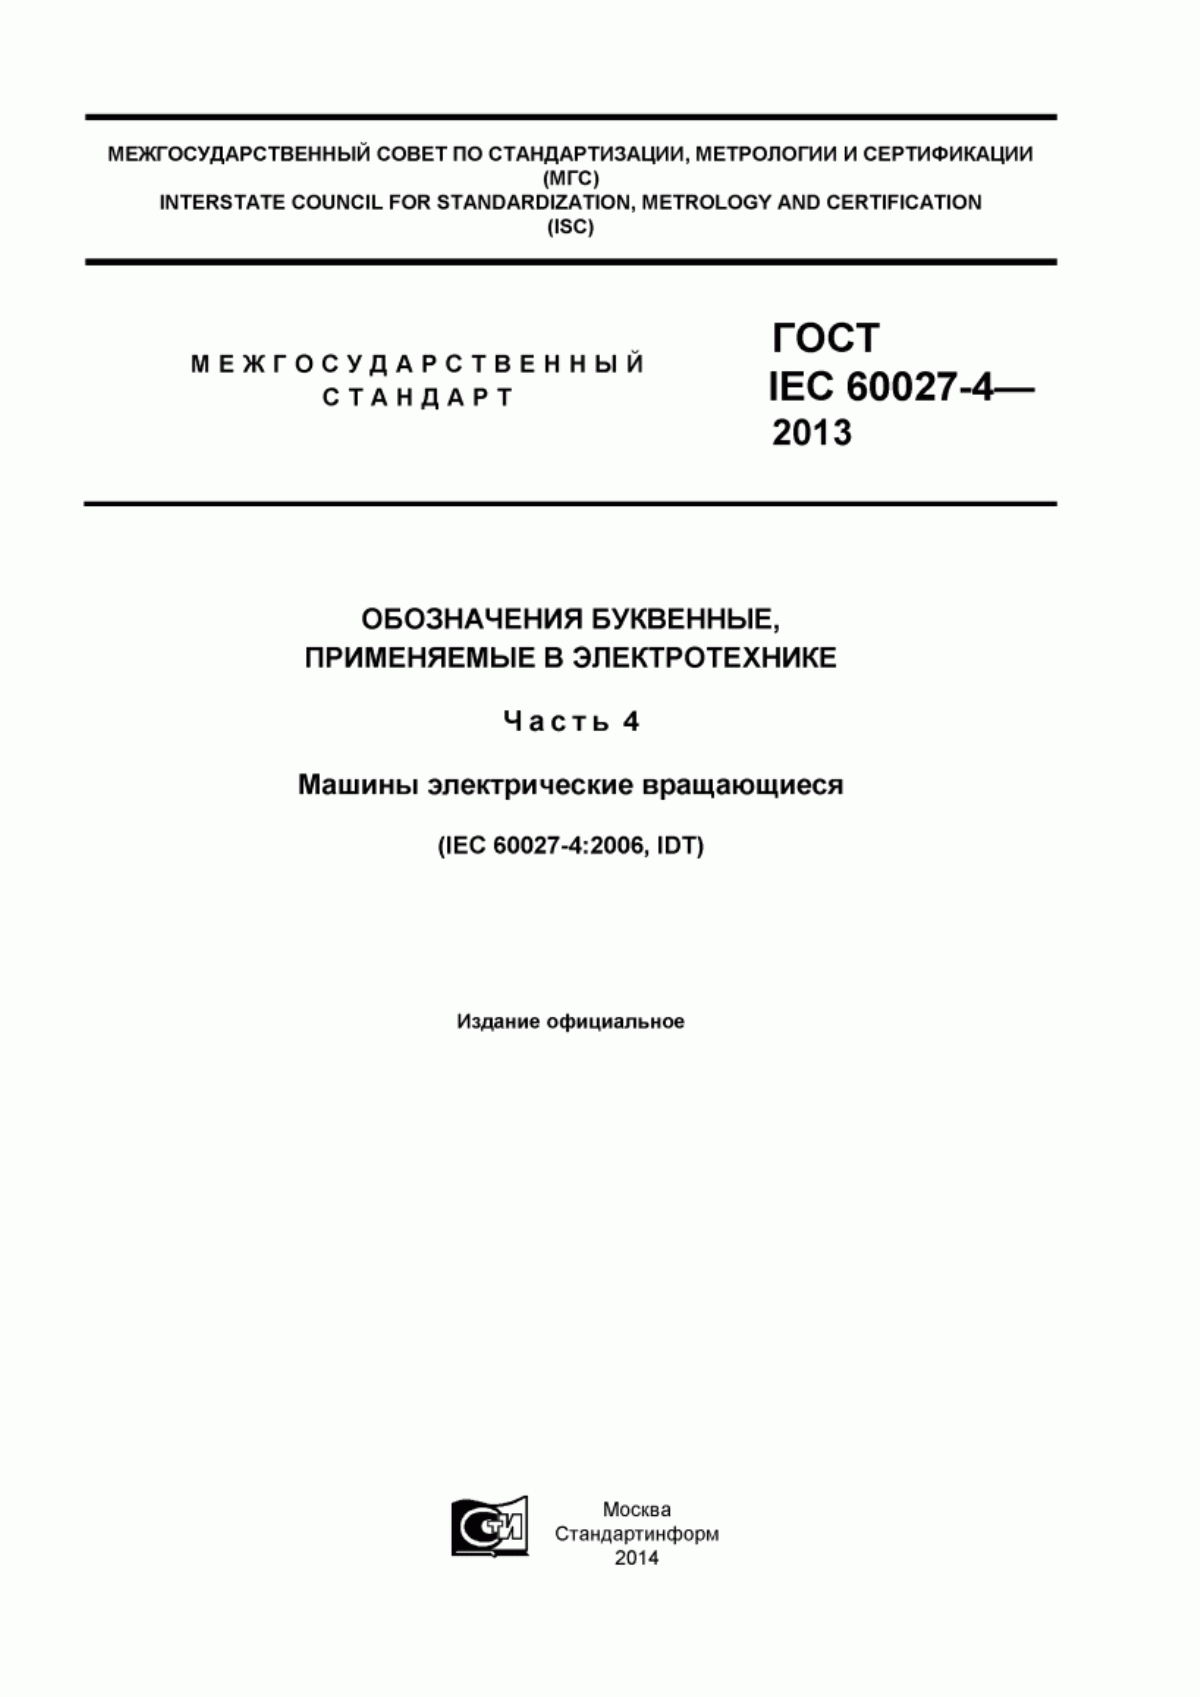 ГОСТ IEC 60027-4-2013 Обозначения буквенные, применяемые в электротехнике. Часть 4. Машины электрические вращающиеся